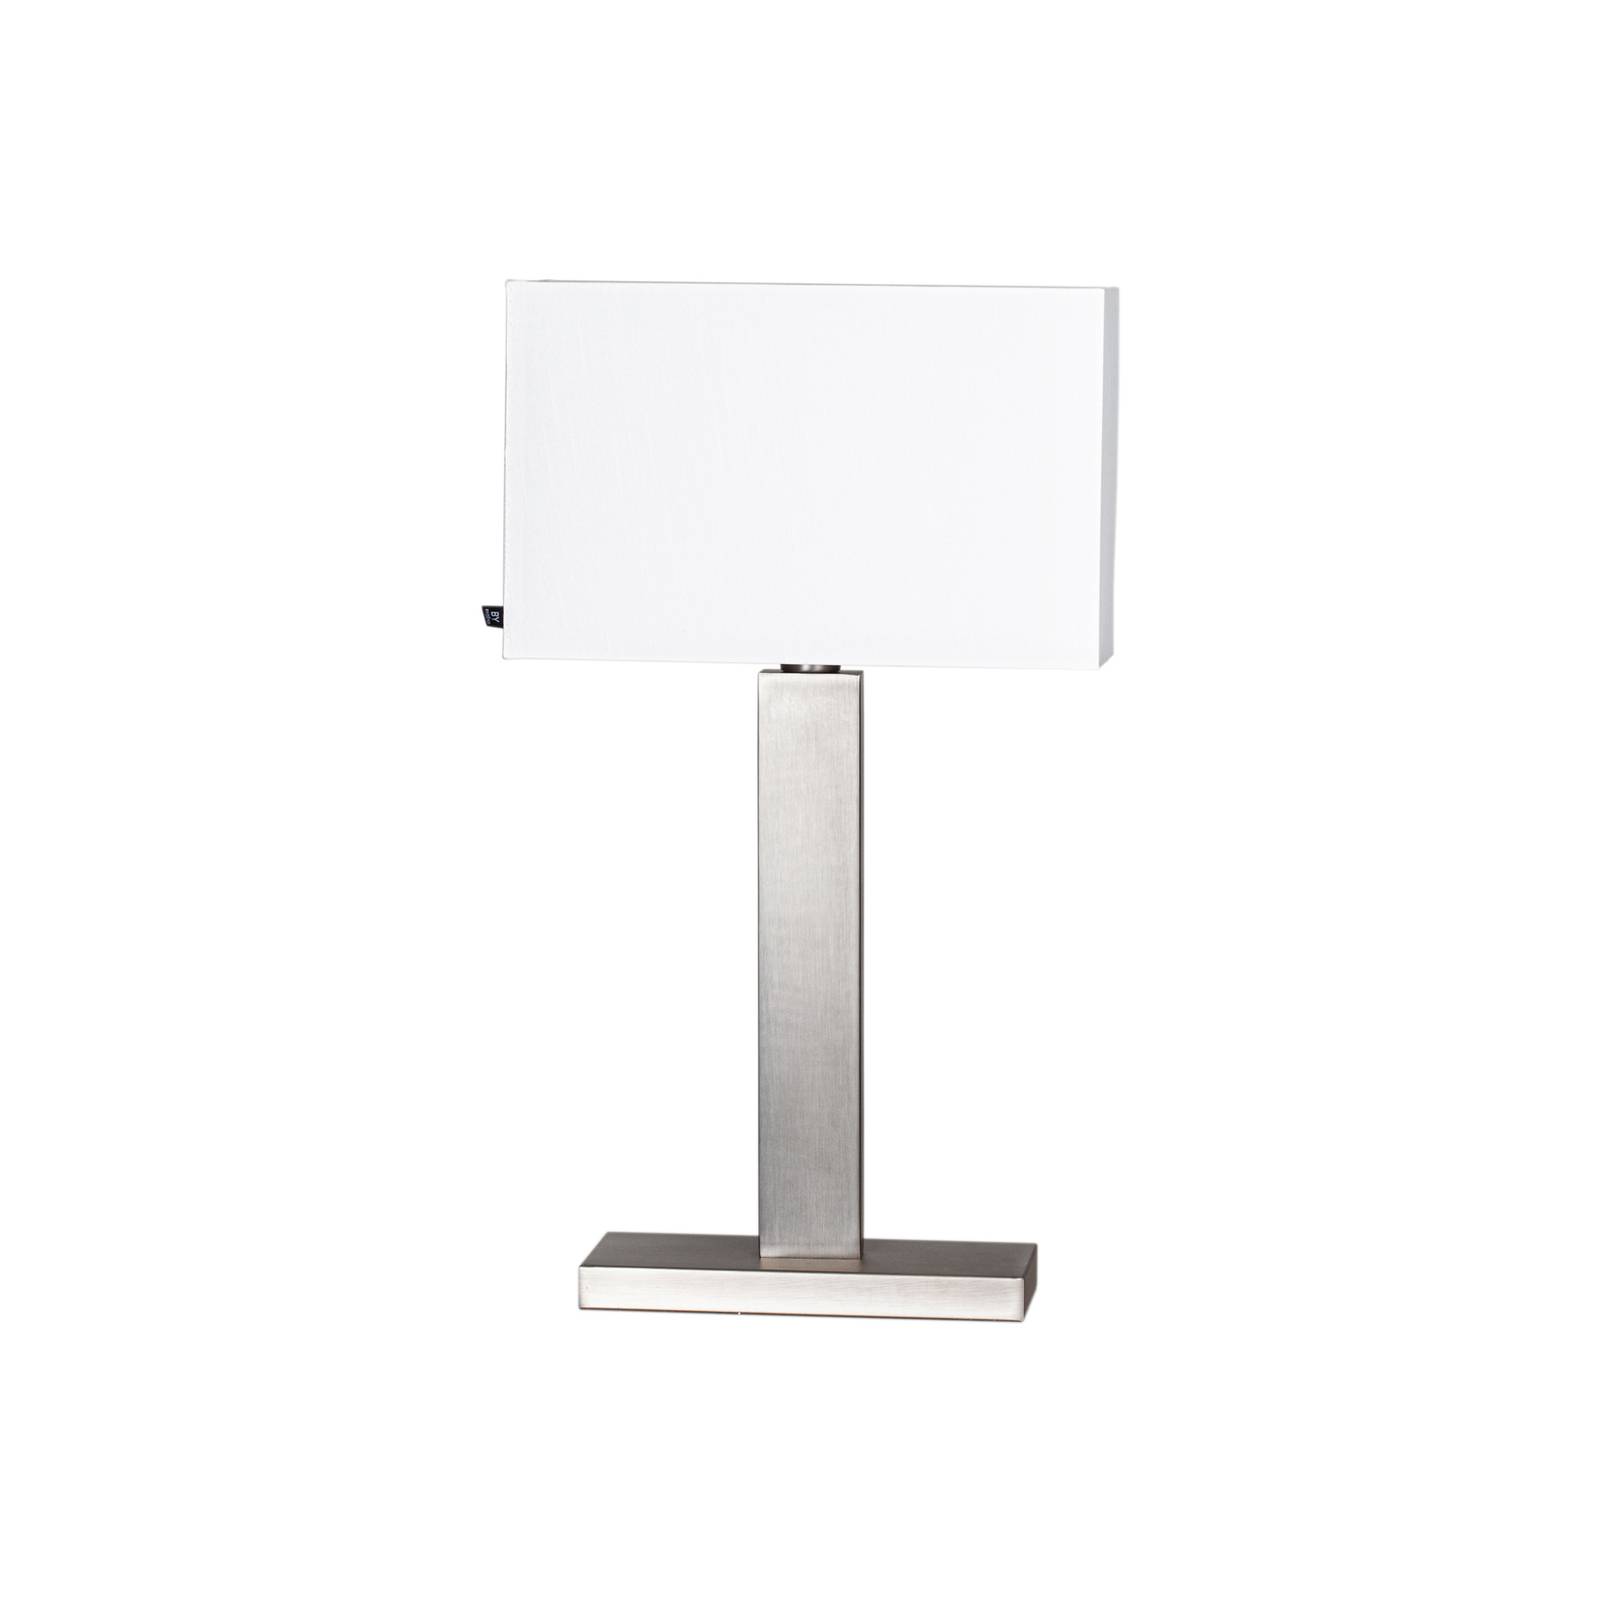 Image of By Rydéns Prime lampe de table hauteur 69cm nickel/blanc 7391741010568